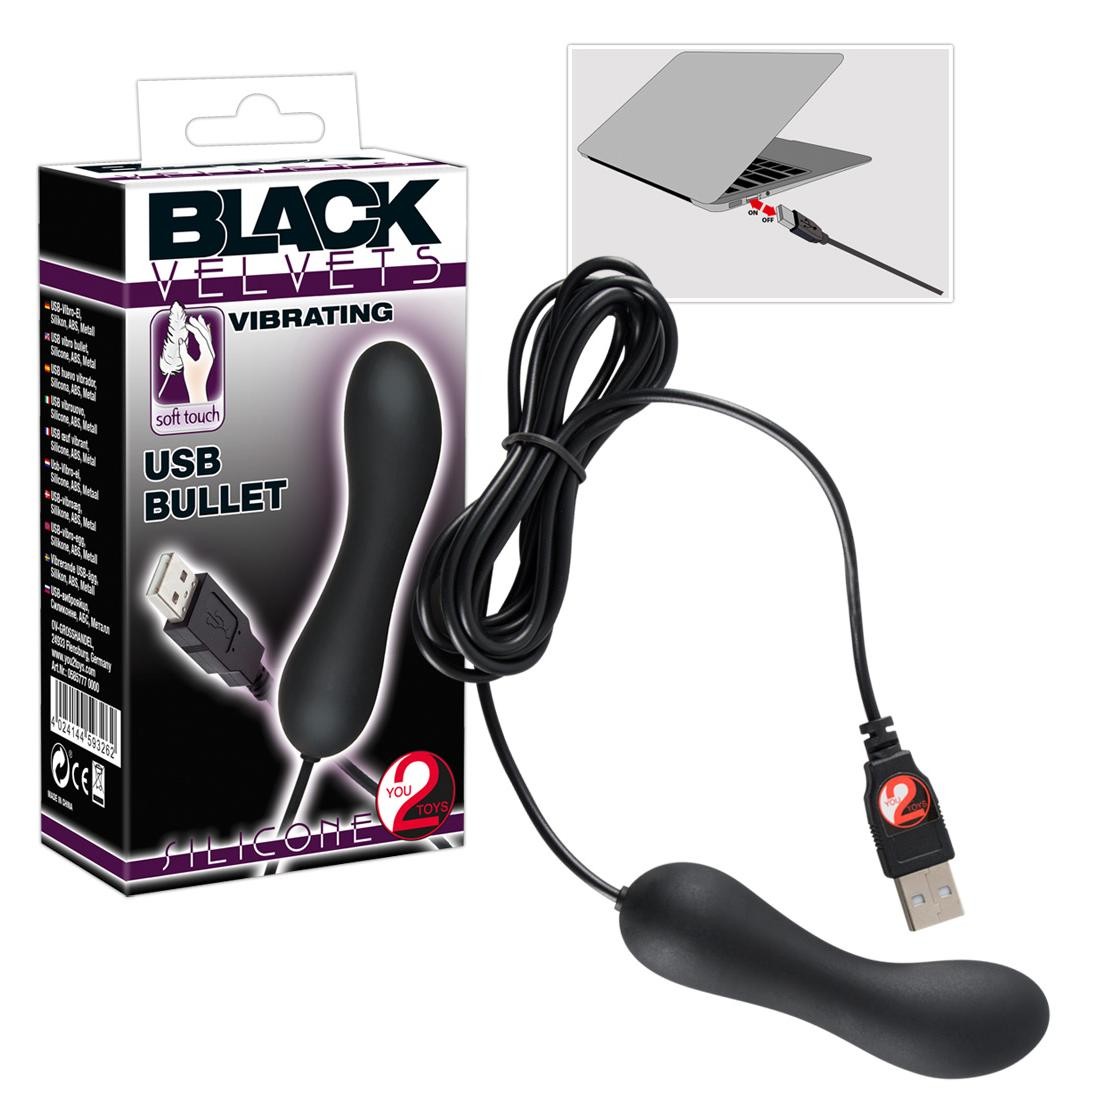  Black  Velvets  -  Black  Velvets  USB  Bullet  -  Mini-Vibrator 